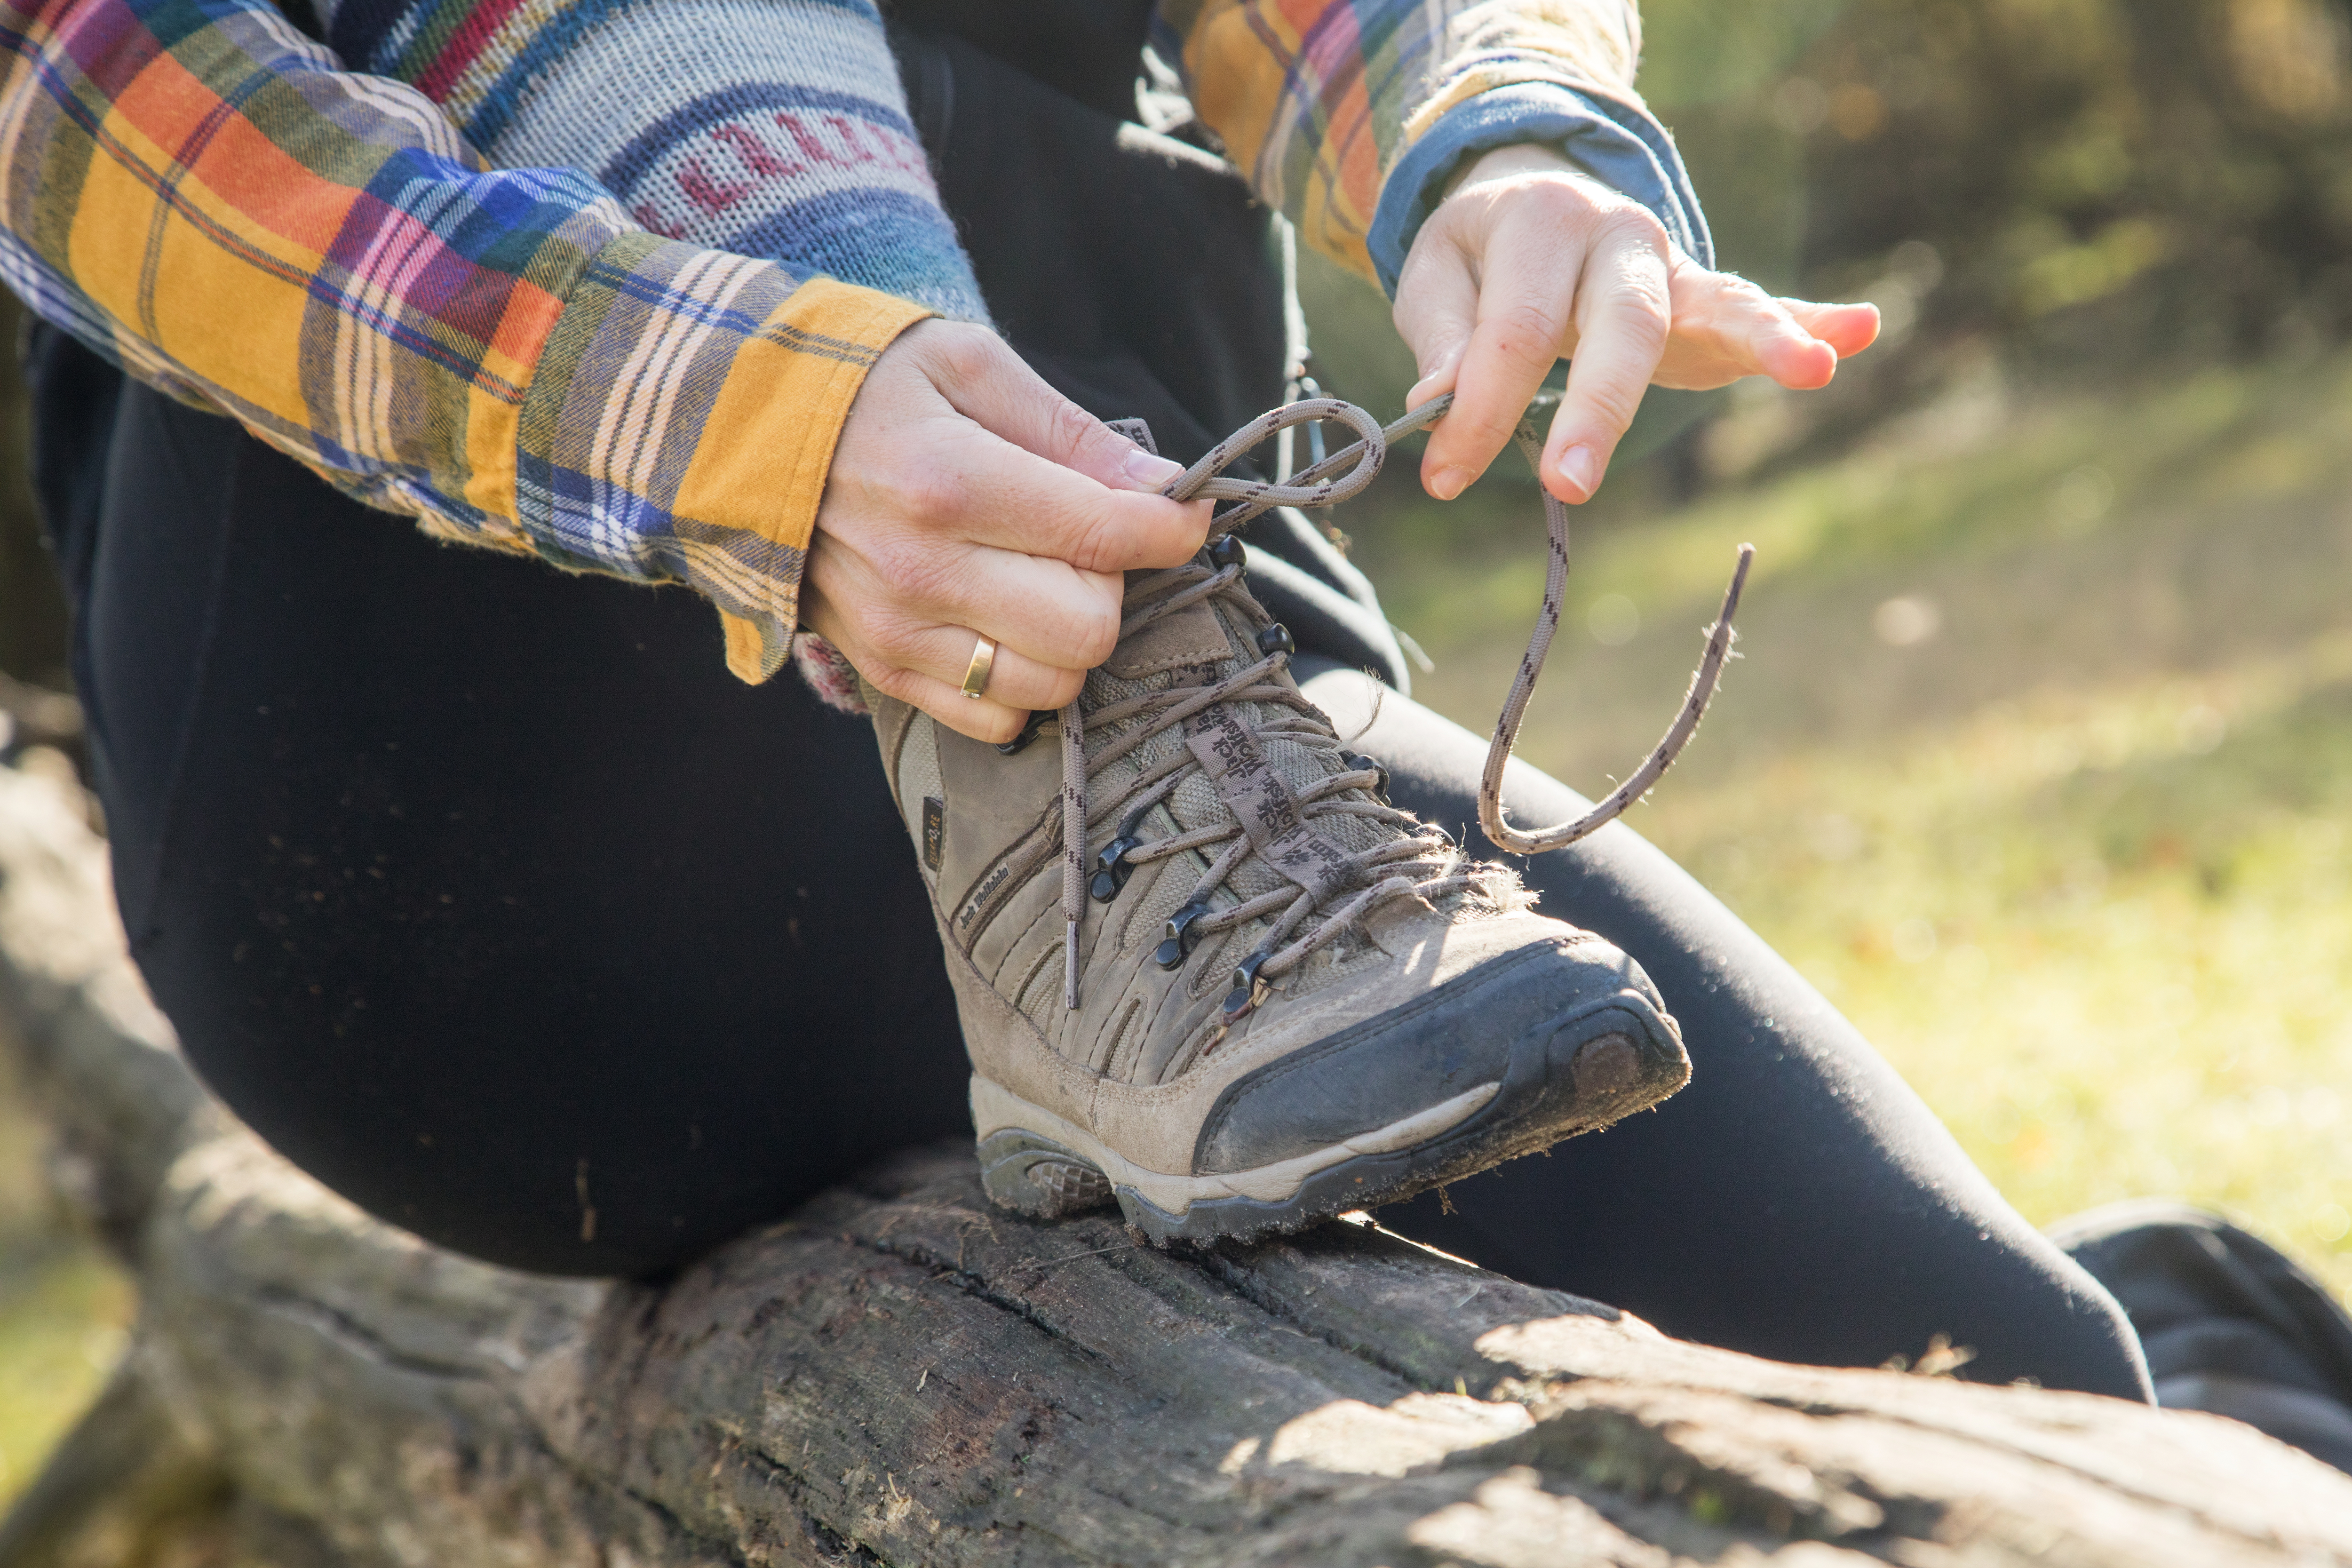 El calzado especial para caminatas protege los pies y ofrece mayor equilibrio sobre terrenos irregulares. Foto: Christin Klose/dpa